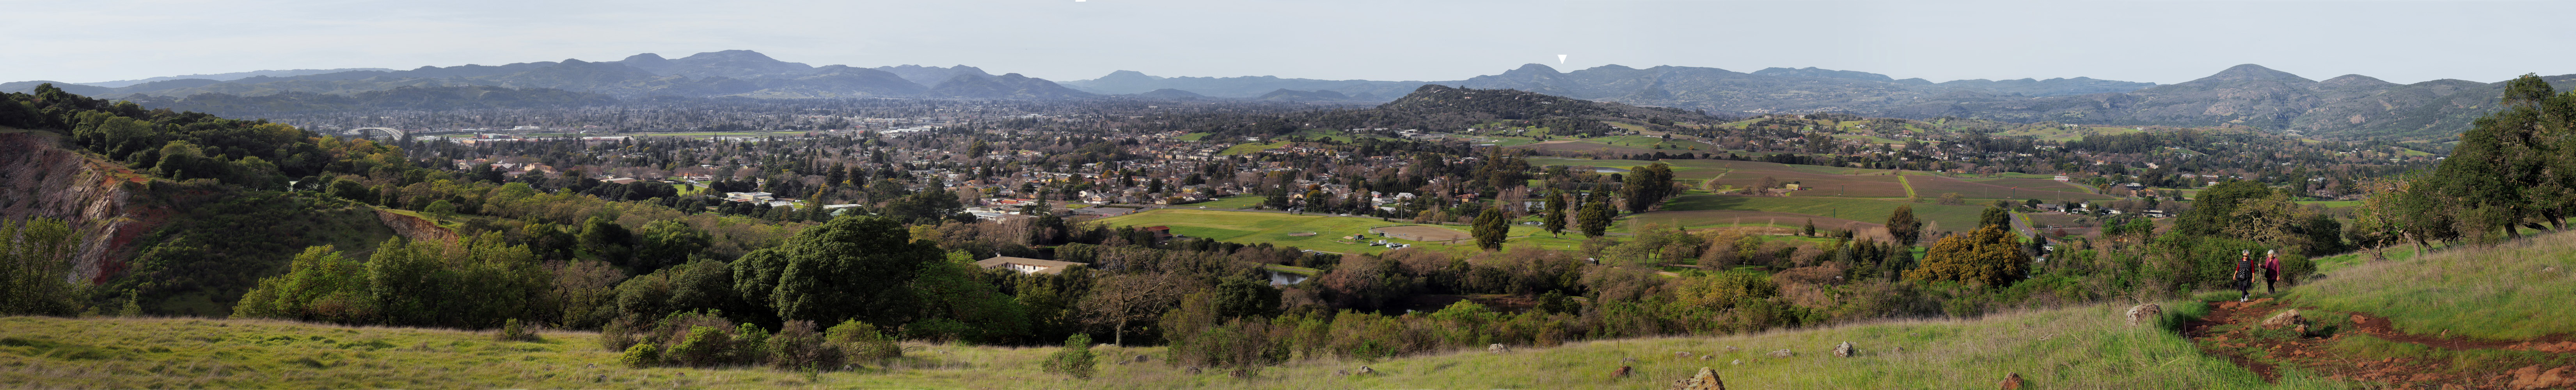 bill-hocker-from-skyline-park-napa-valley-california-2015